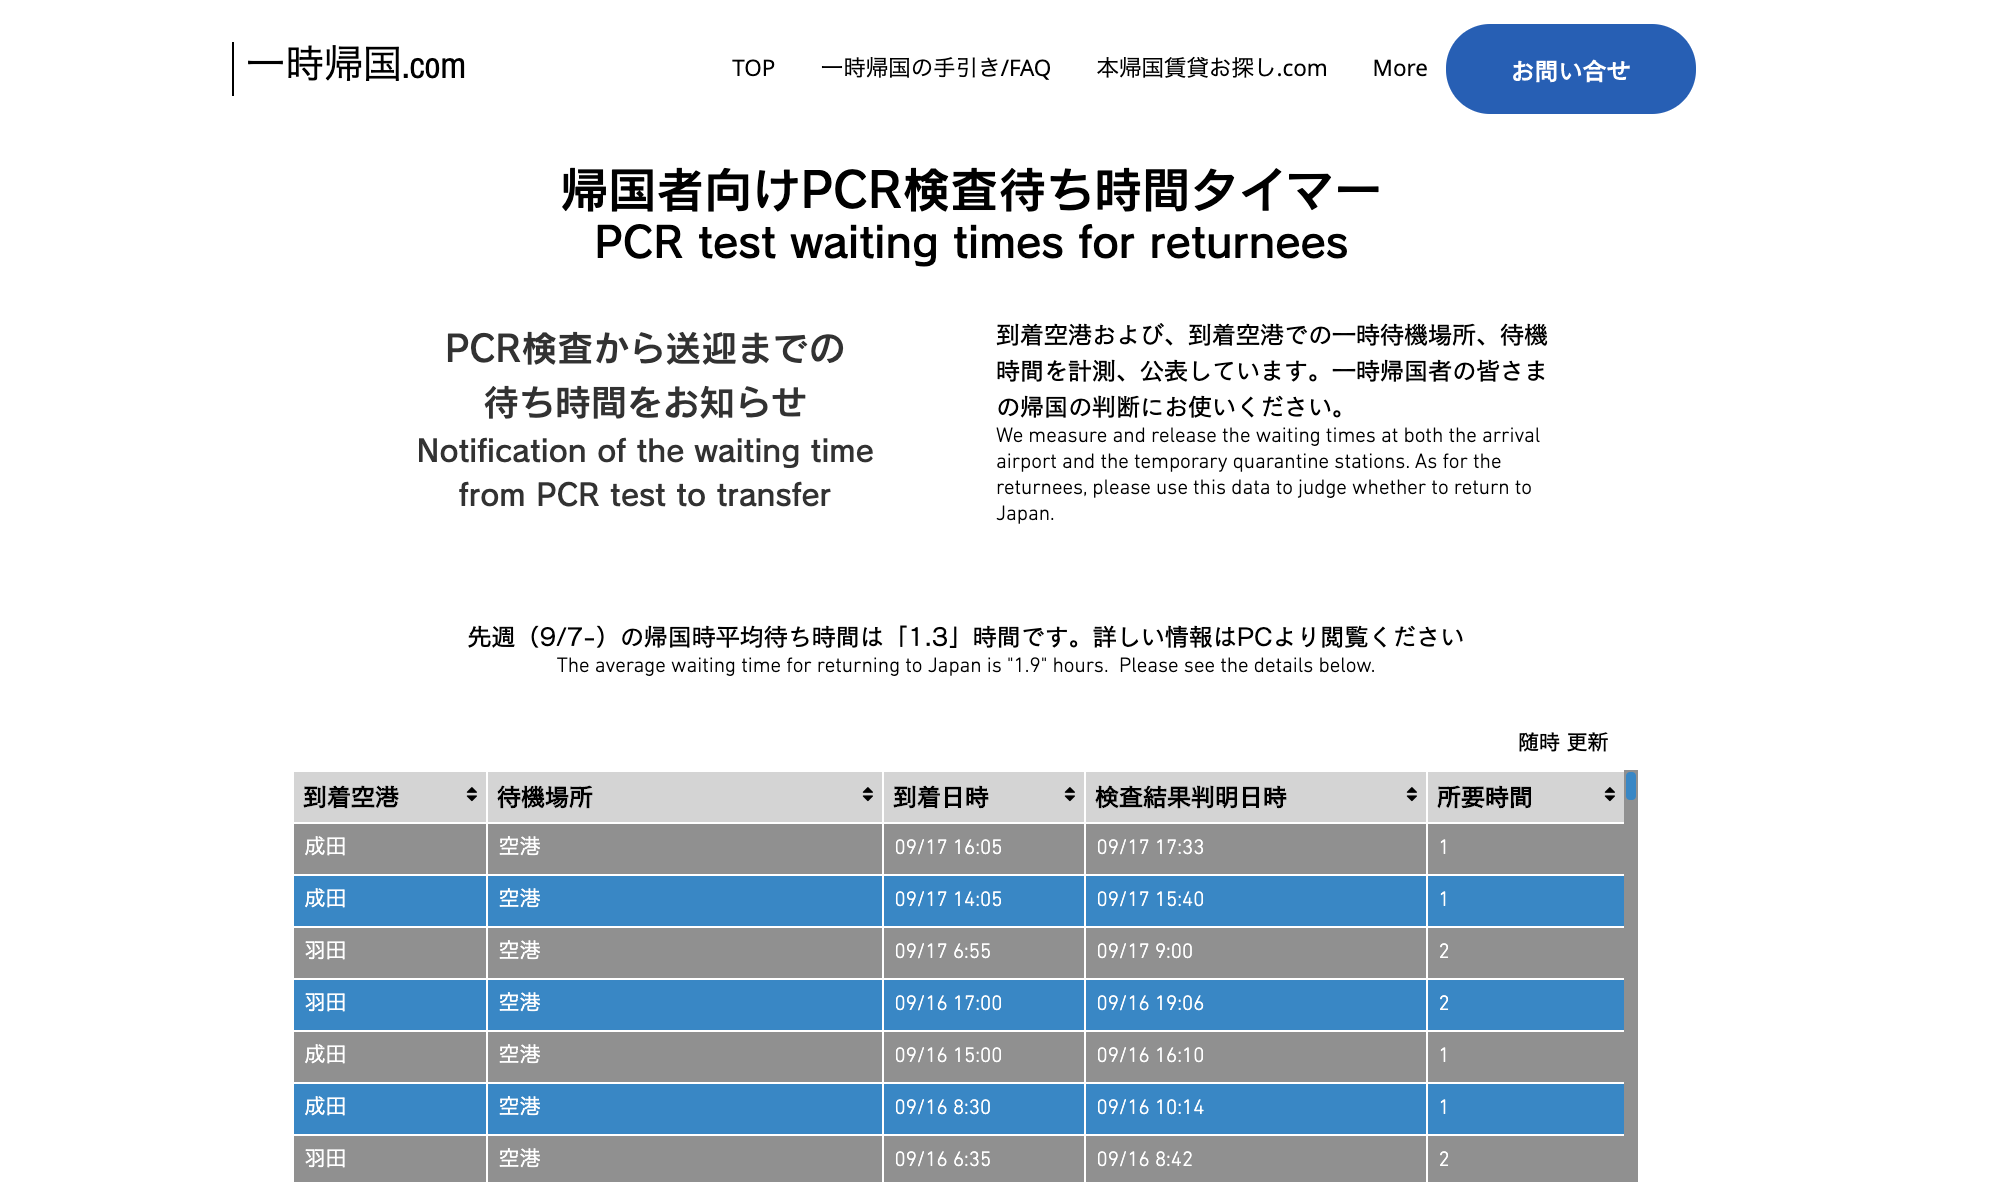 【空港PCR検査結果待ち時間 最新統計】帰国者PCR検査待ち時間、羽田・成田とも短縮し1時間台に 先週(9/7〜9/13)1週間の平均待ち時間 (国内最大数の帰国データ)